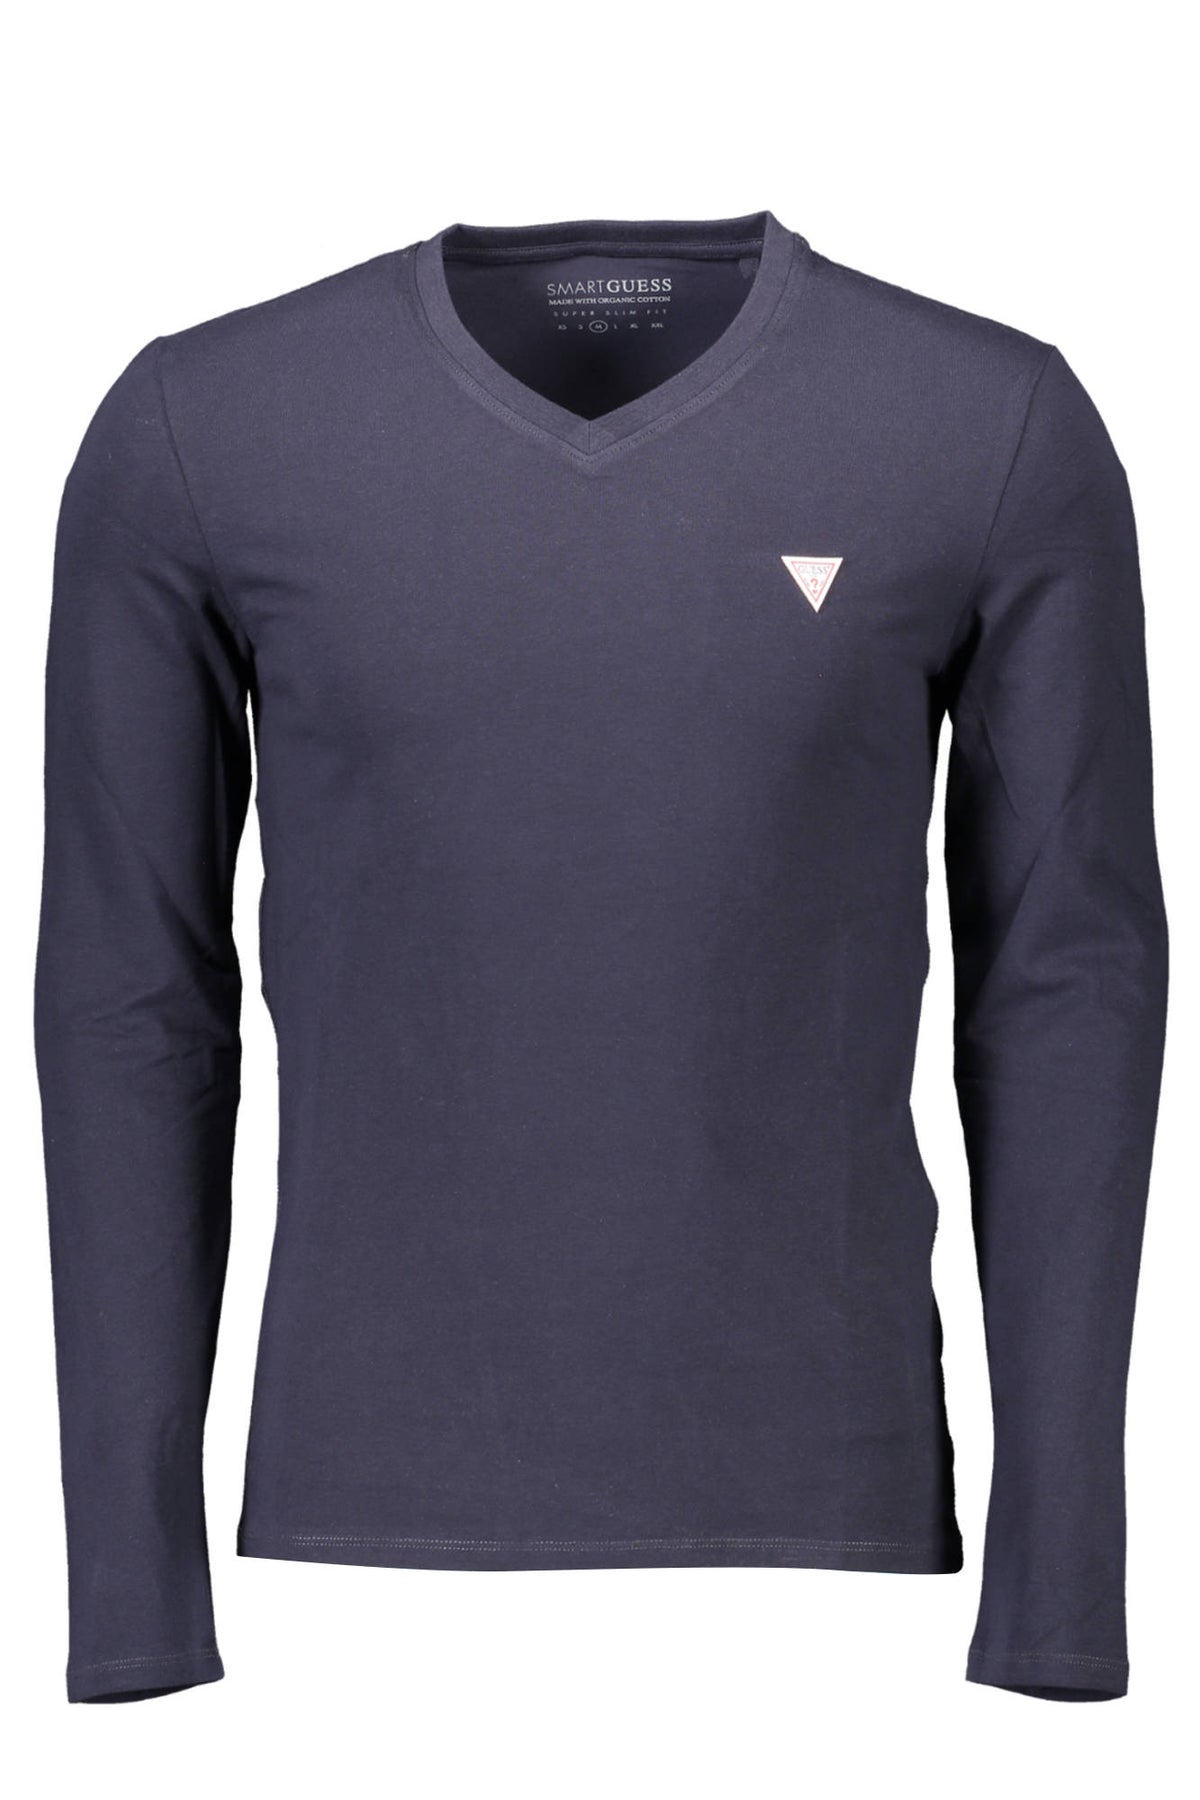 GUESS JEANS Herren T-Shirt Shirt Sweatshirt Oberteil mit V-Ausschnitt, langärmlig